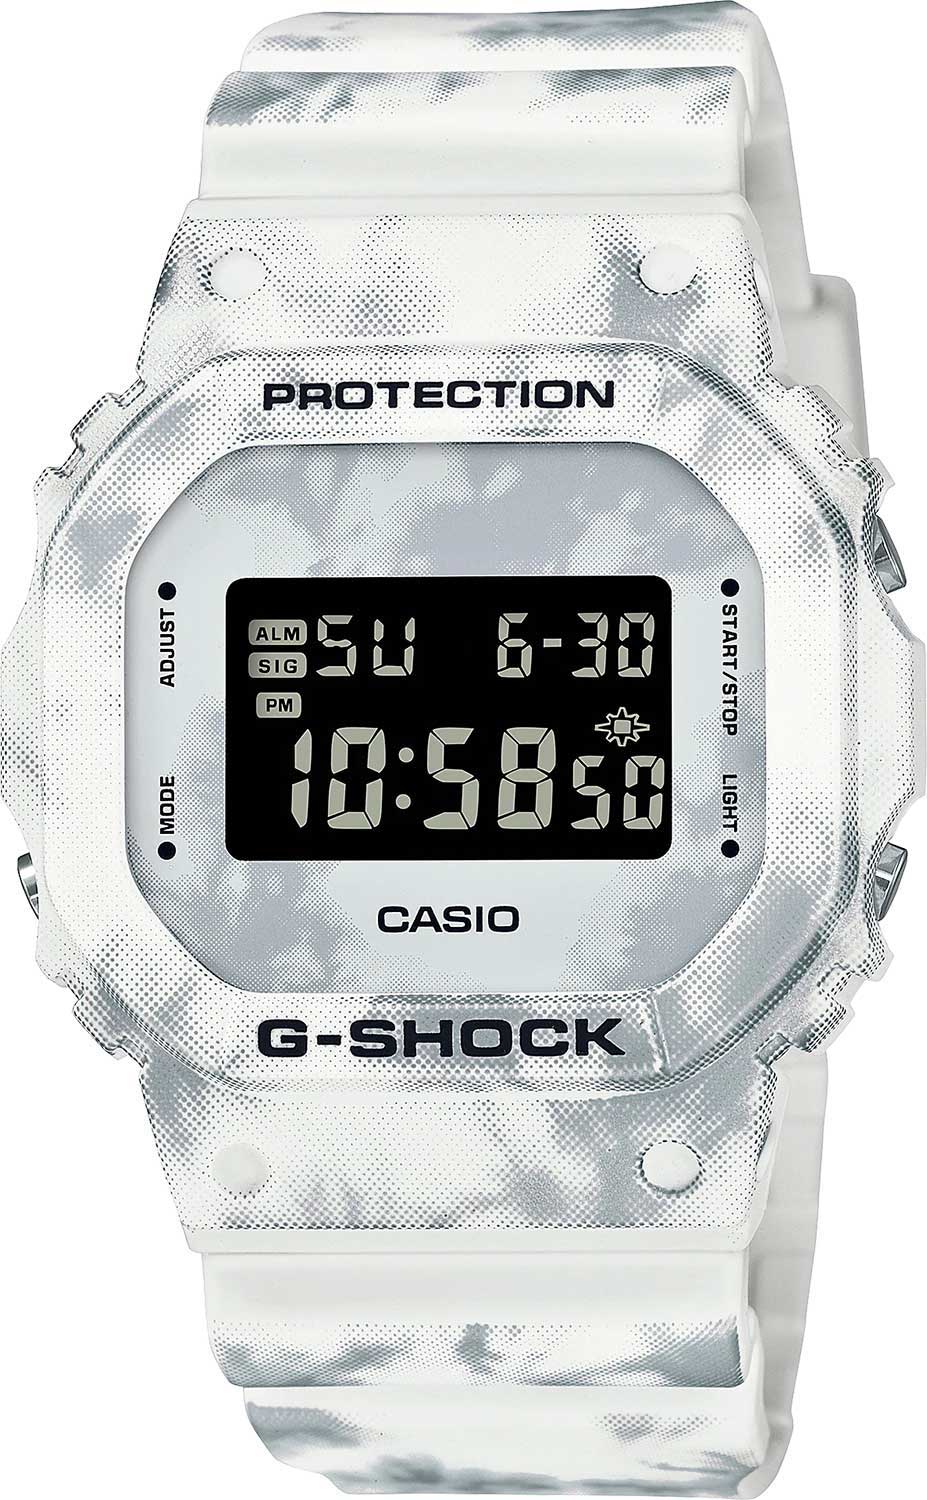    Casio G-SHOCK DW-5600GC-7ER  